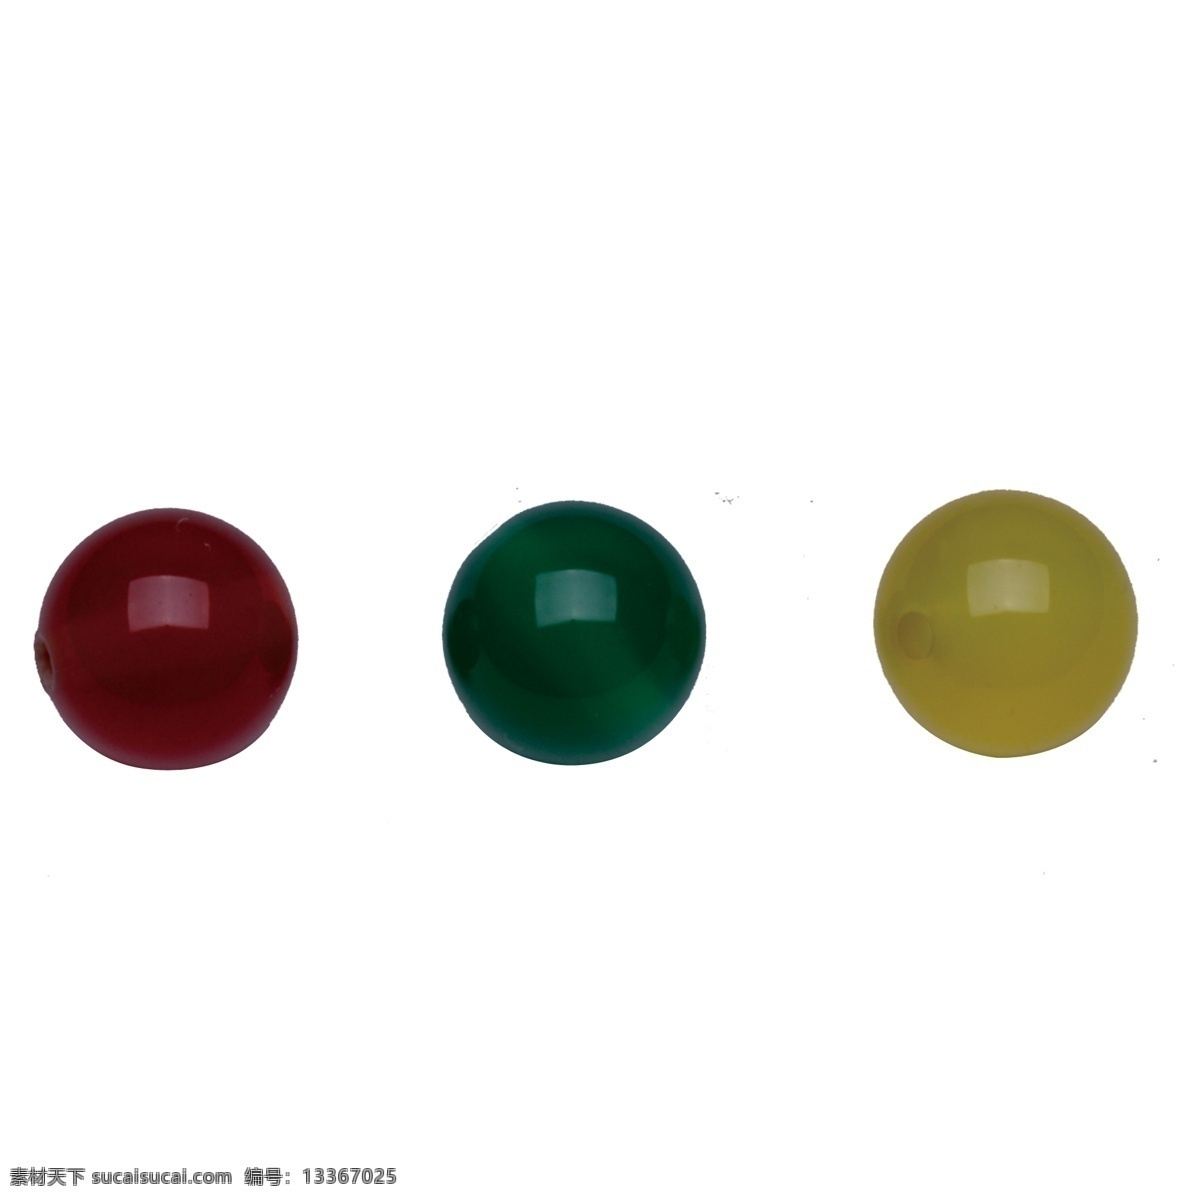 彩色 珍珠 装饰品 圆形 立体 立体球形 球形物品 女式珍珠 彩色珍珠 三个珍珠